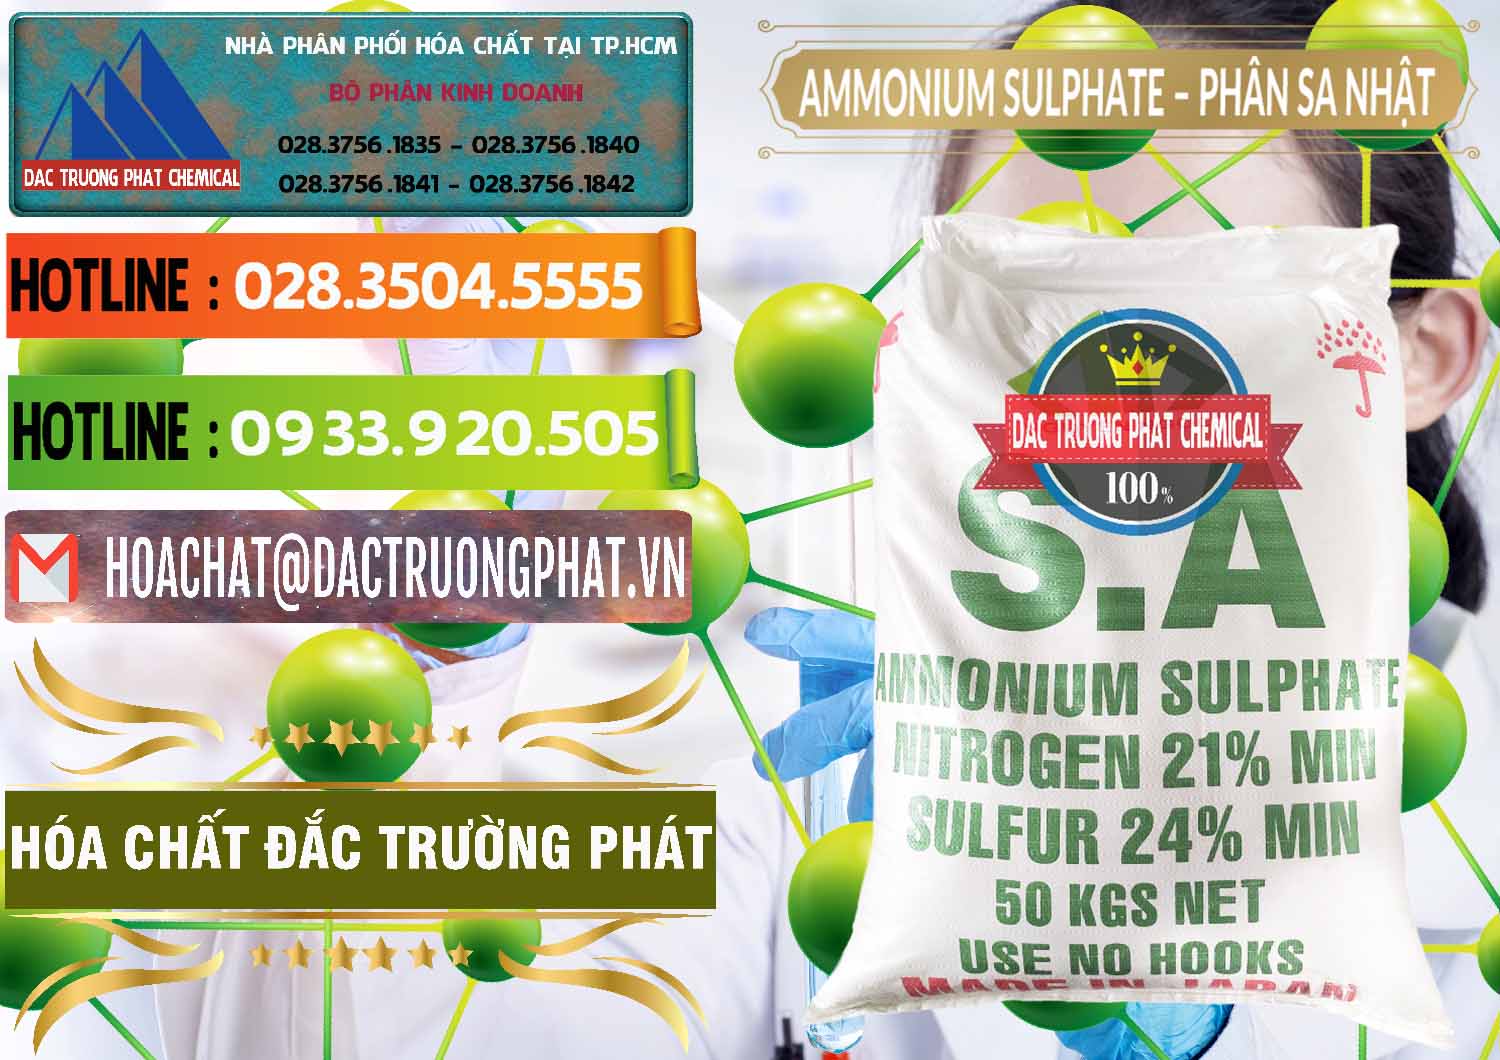 Nơi phân phối và bán Ammonium Sulphate – Phân Sa Nhật Japan - 0023 - Cty chuyên kinh doanh ( cung cấp ) hóa chất tại TP.HCM - cungcaphoachat.com.vn